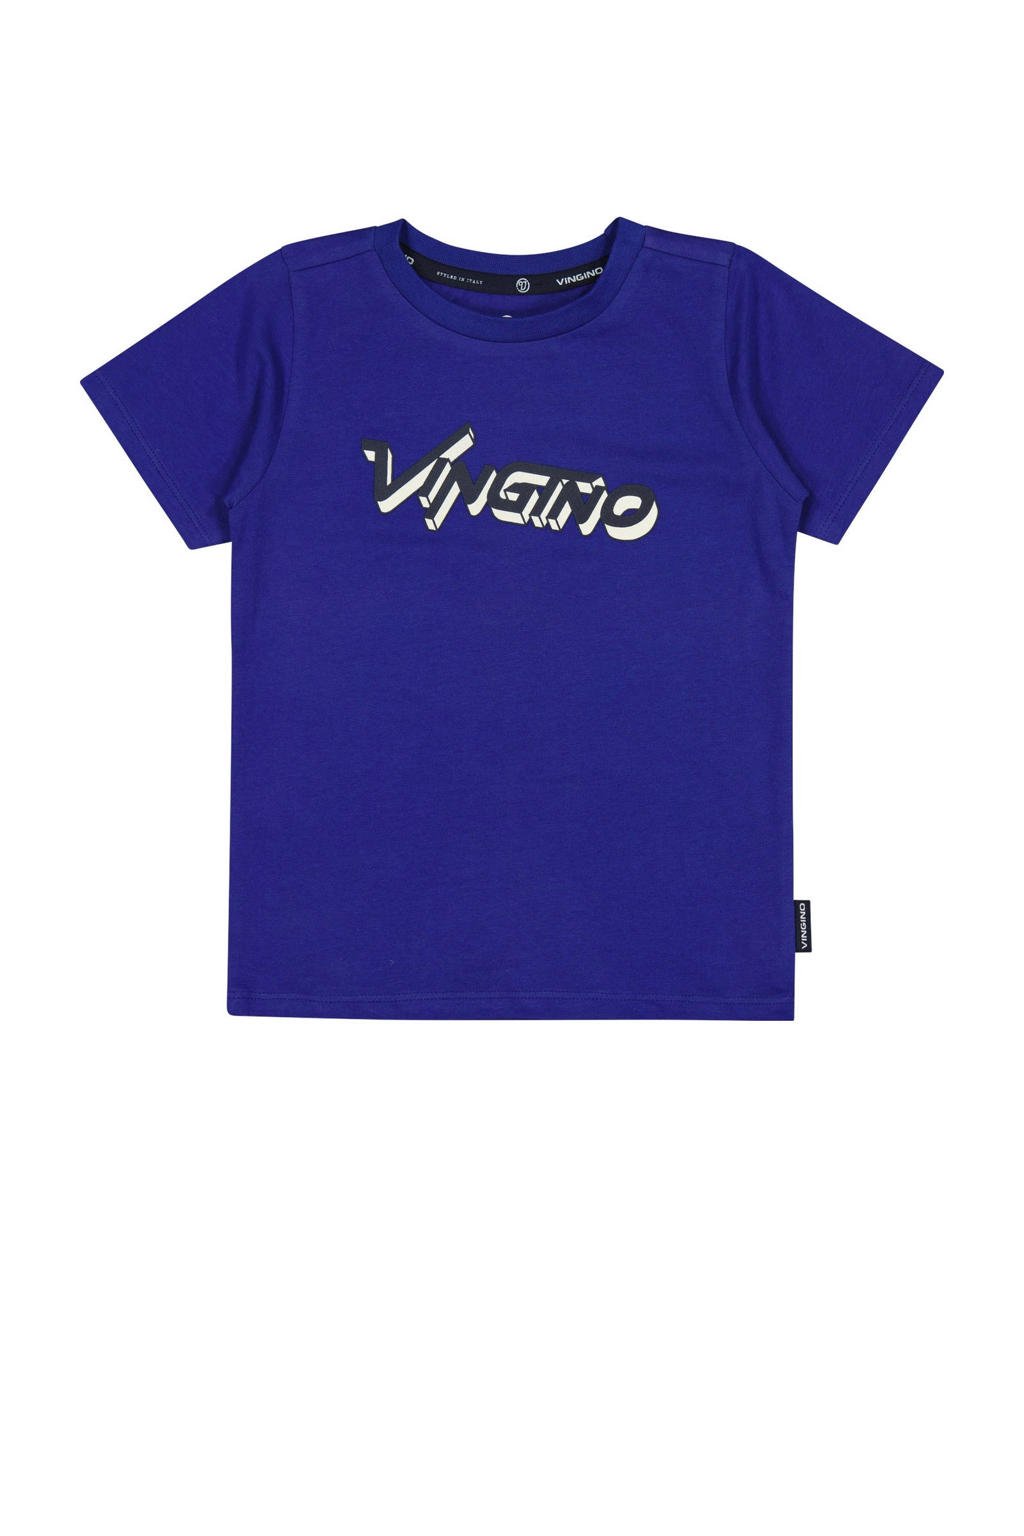 Blauwe jongens Vingino T-shirt van stretchkatoen met logo dessin, korte mouwen en ronde hals